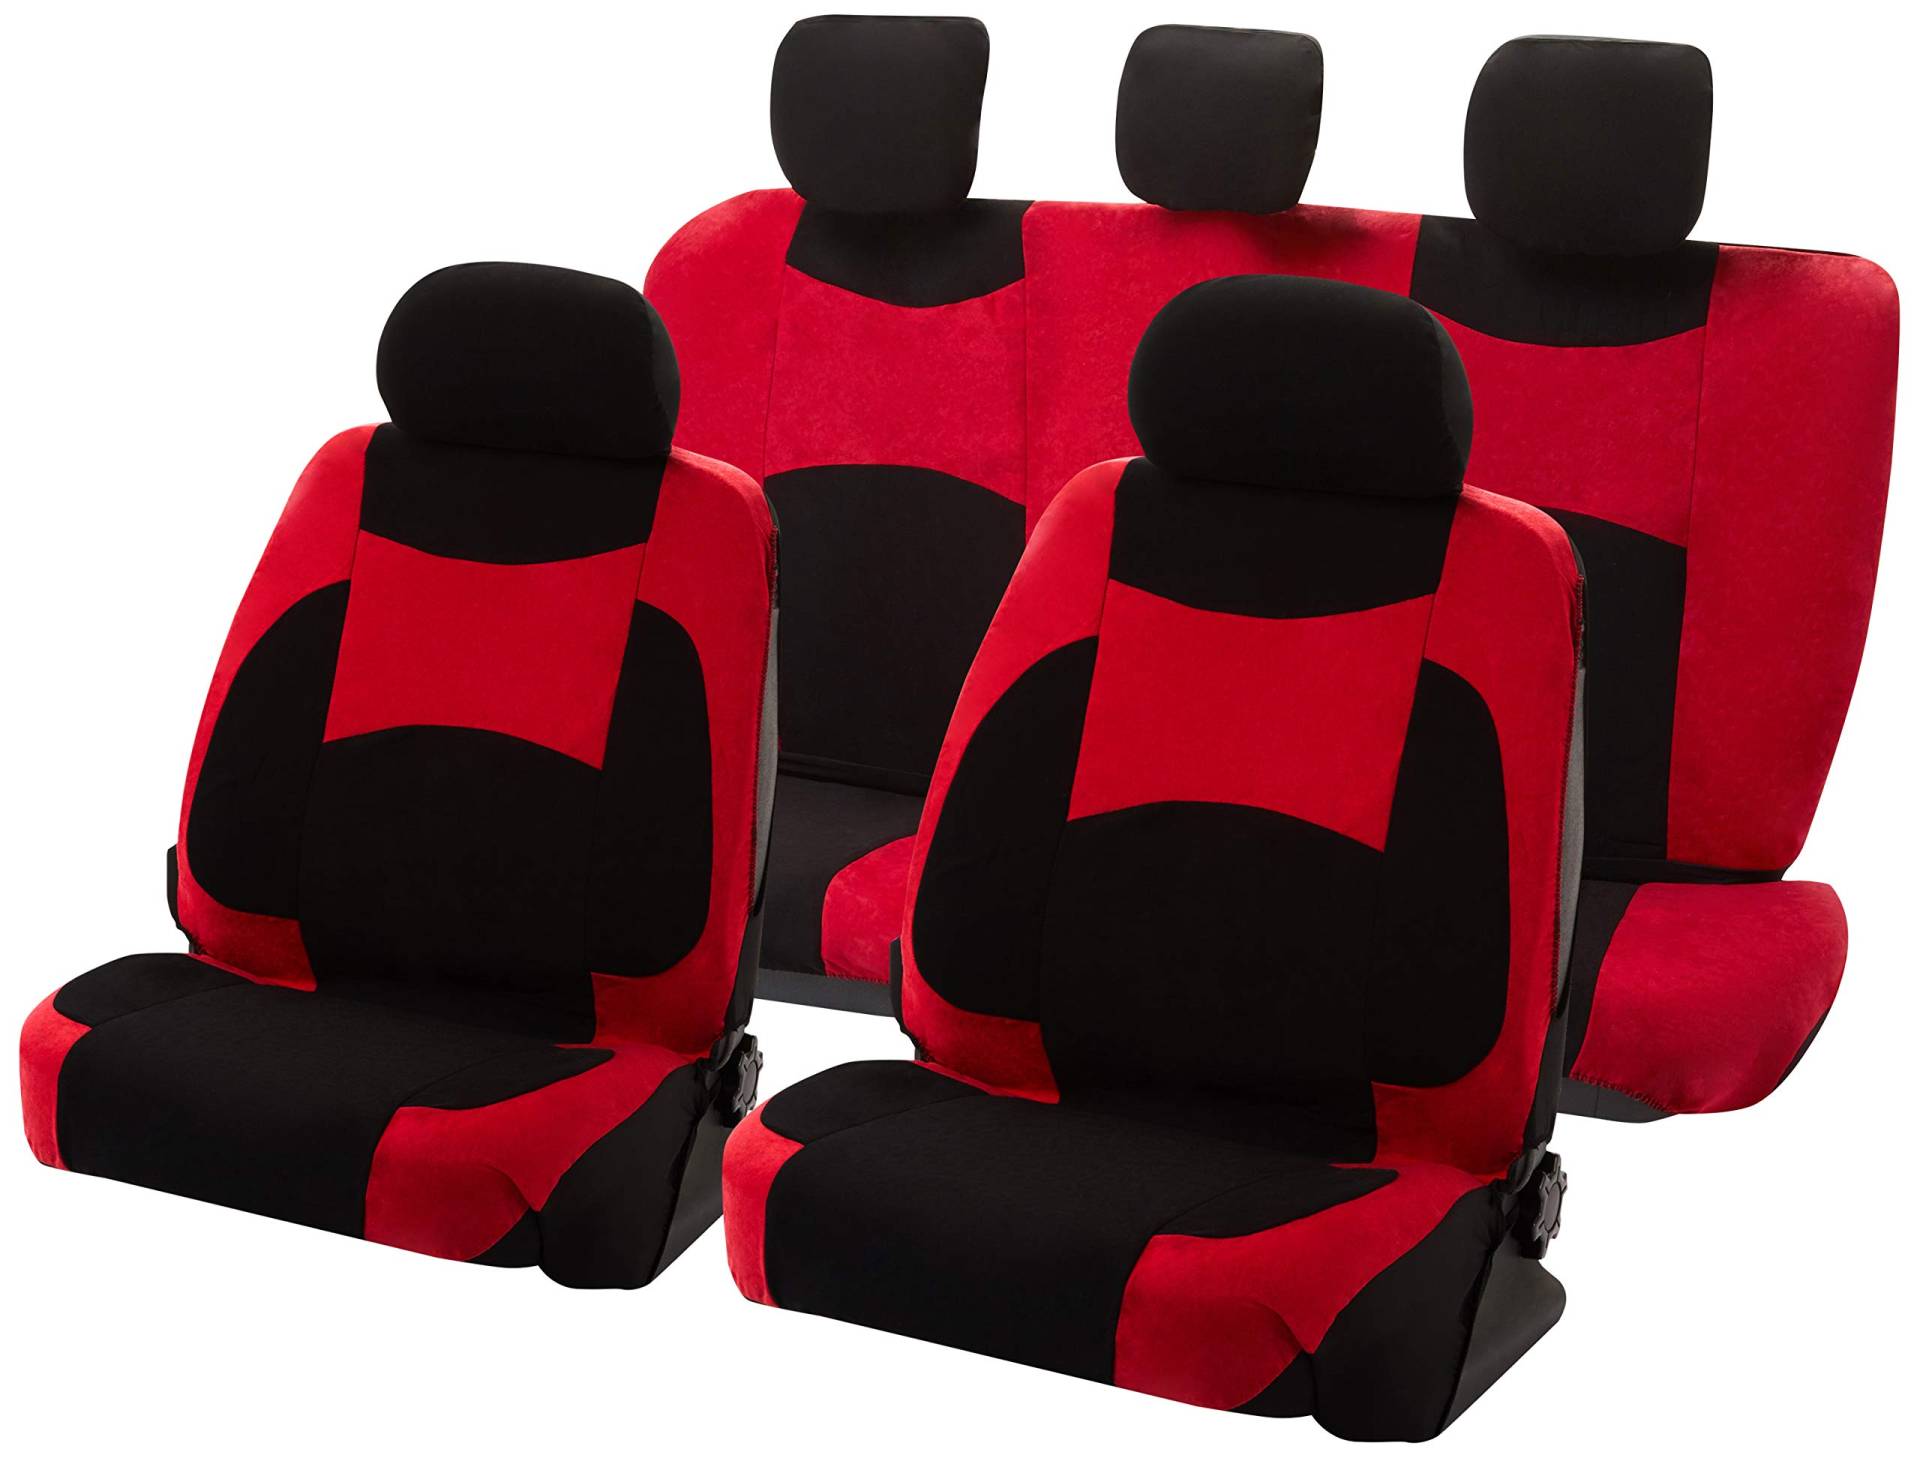 Cosmos Full Car Seat Covers Set Innenraumschutz Mikrofaser-Velours-Gewebe Einfache Installation und einfache Reinigung, schwarz / rot Farbe, 14106 Escape von Cosmos